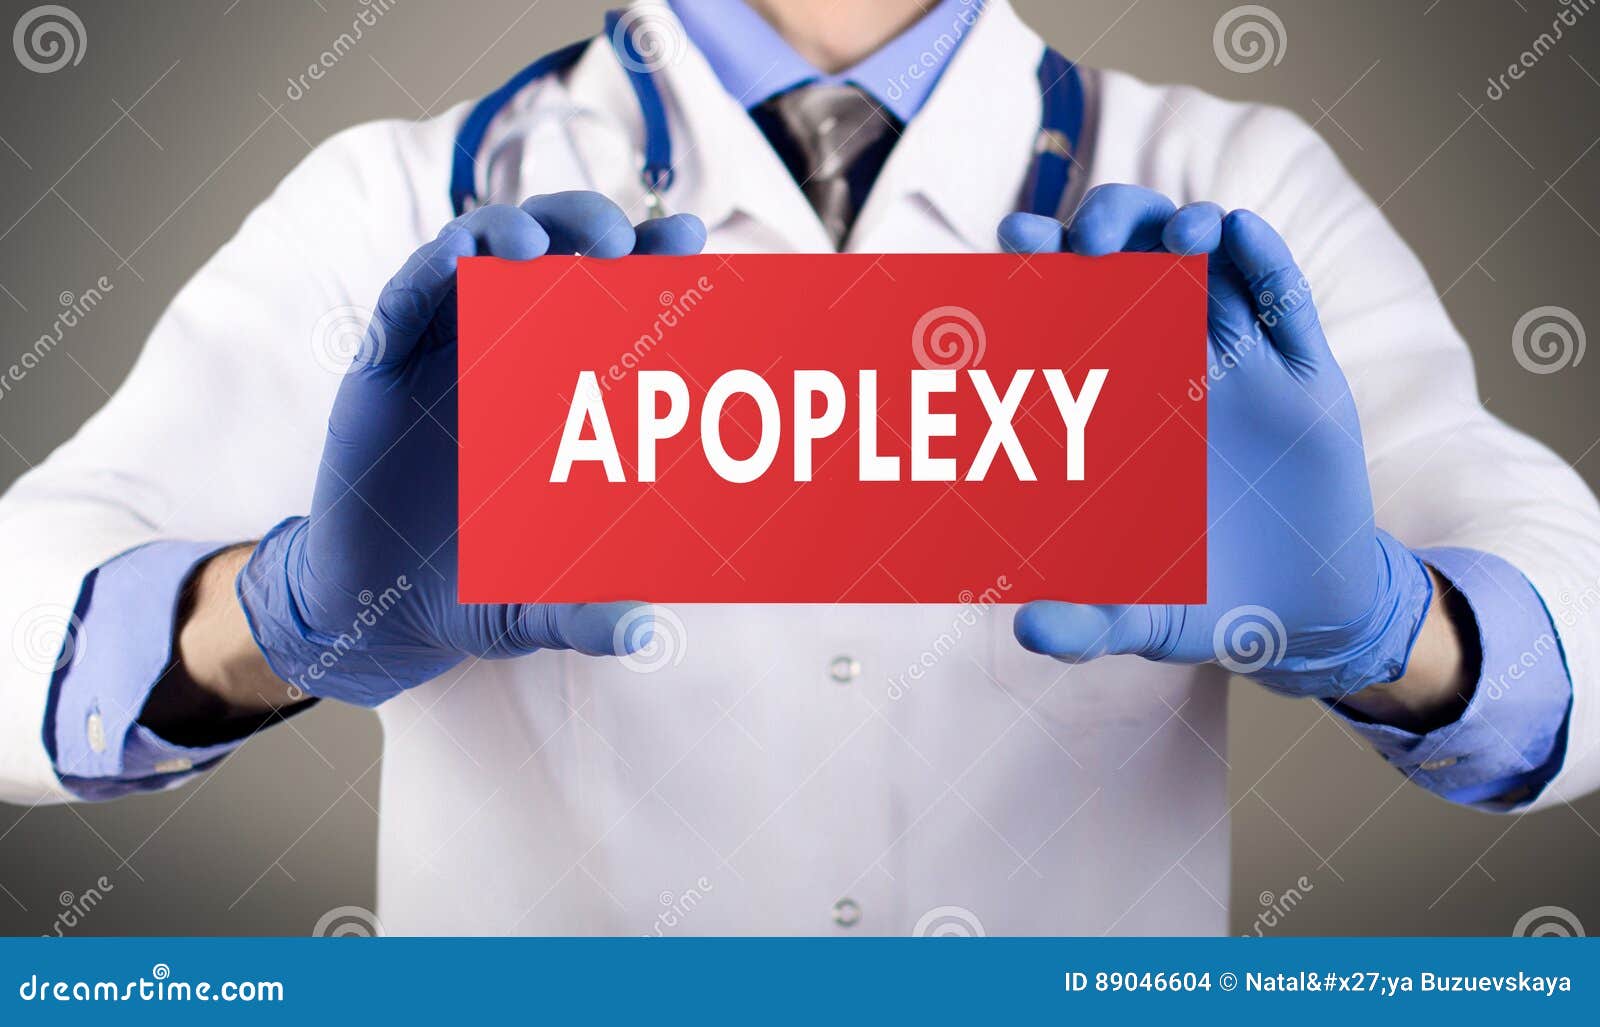 apoplexy